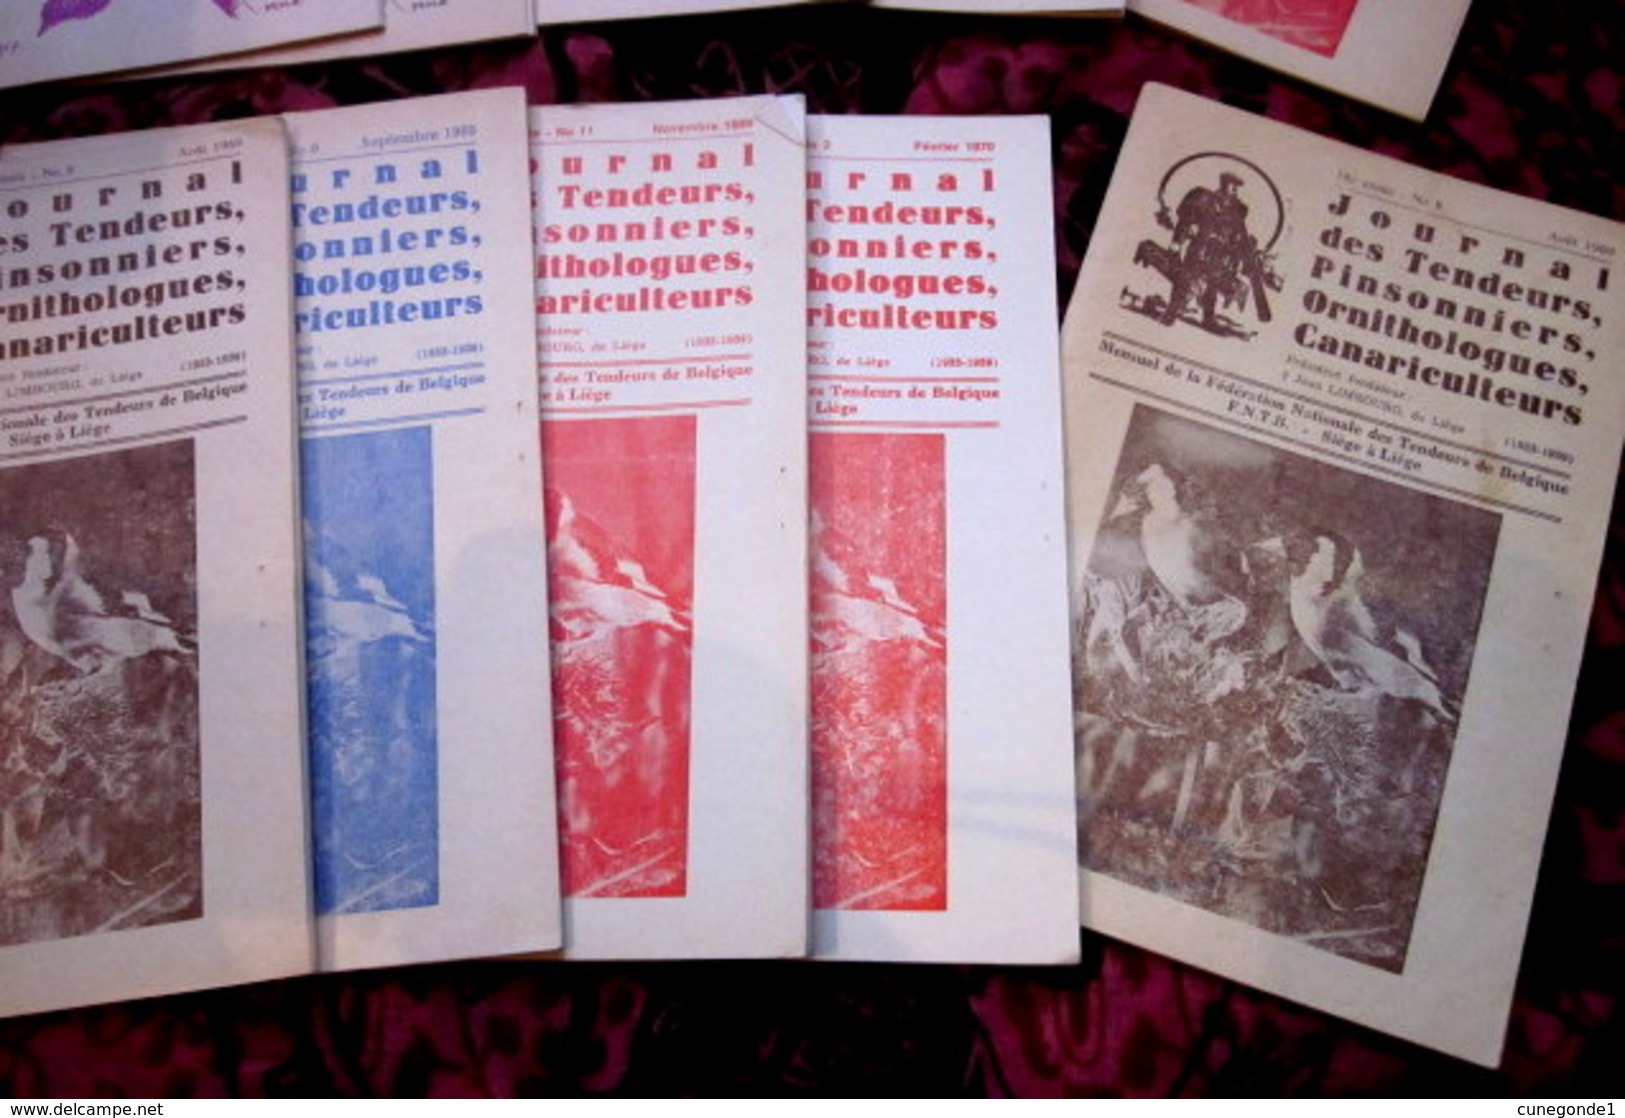 Lot de 19 revues " Journal des tendeurs, Pinsonniers et Ornithologues " de 1965 à 1970